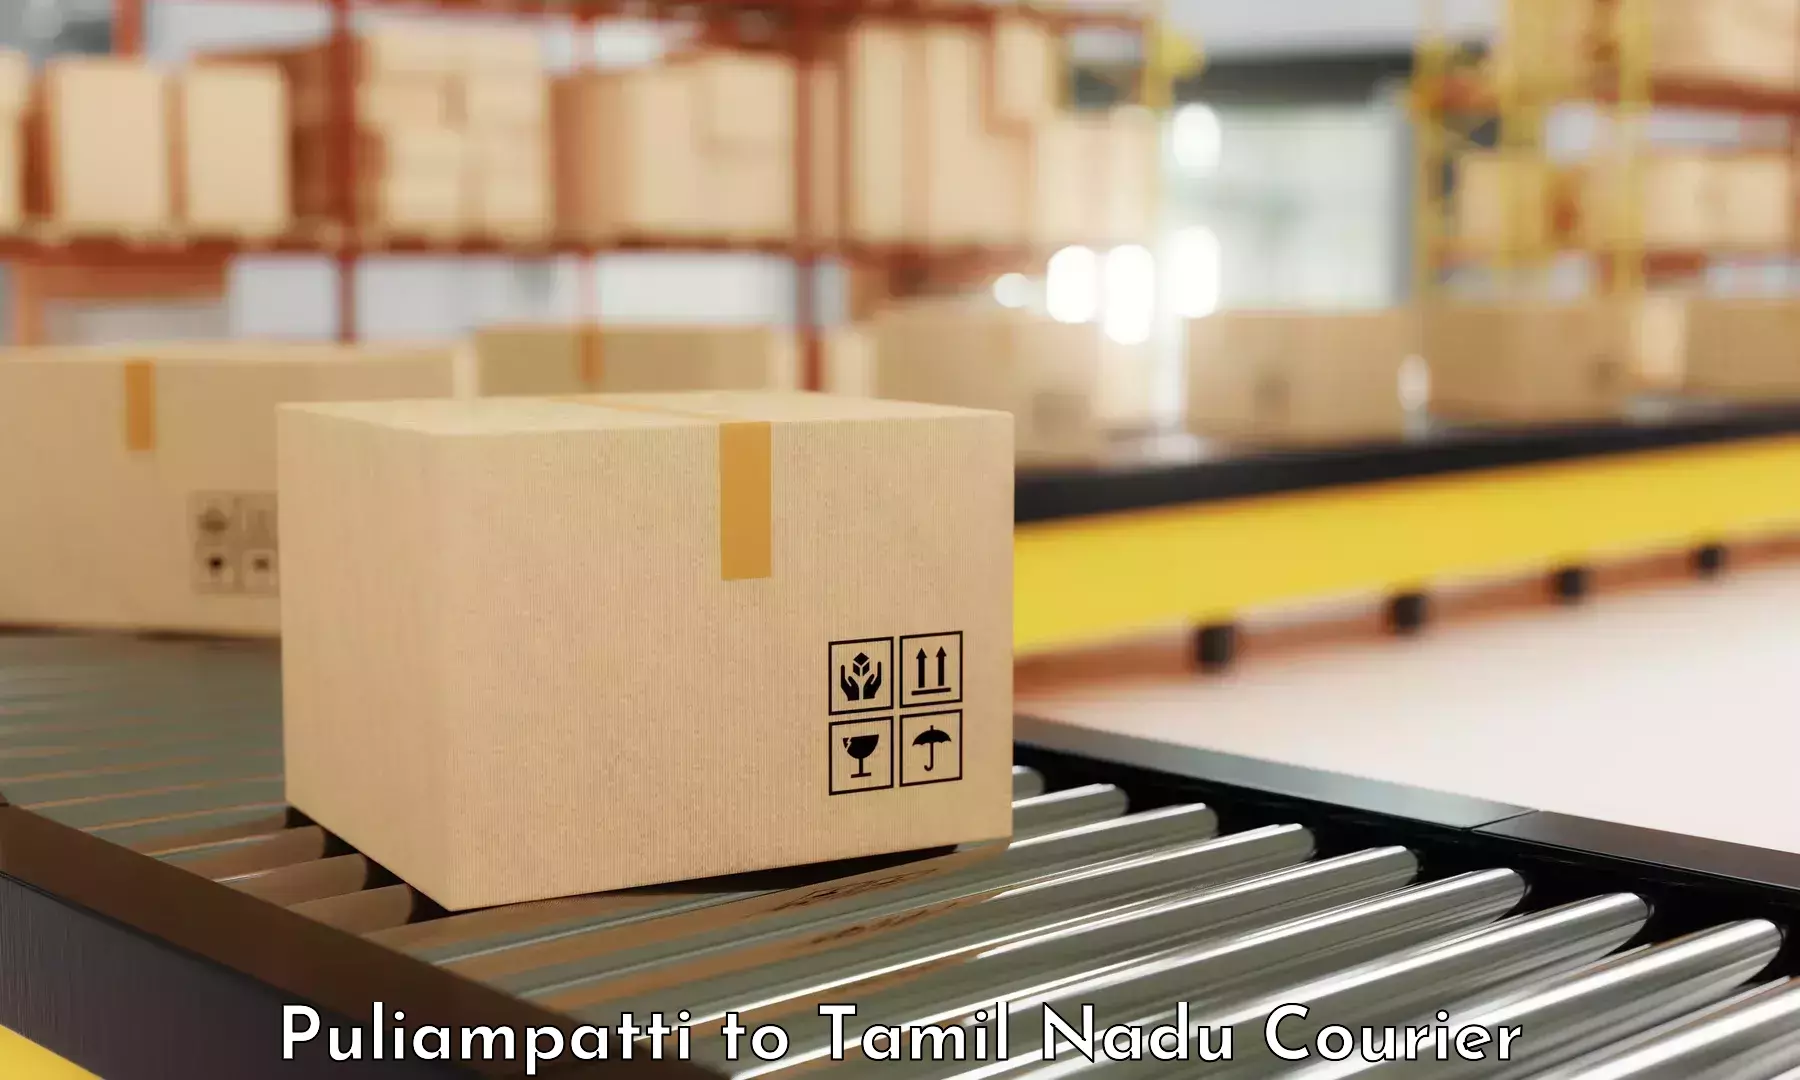 Tech-enabled shipping Puliampatti to Kangeyam